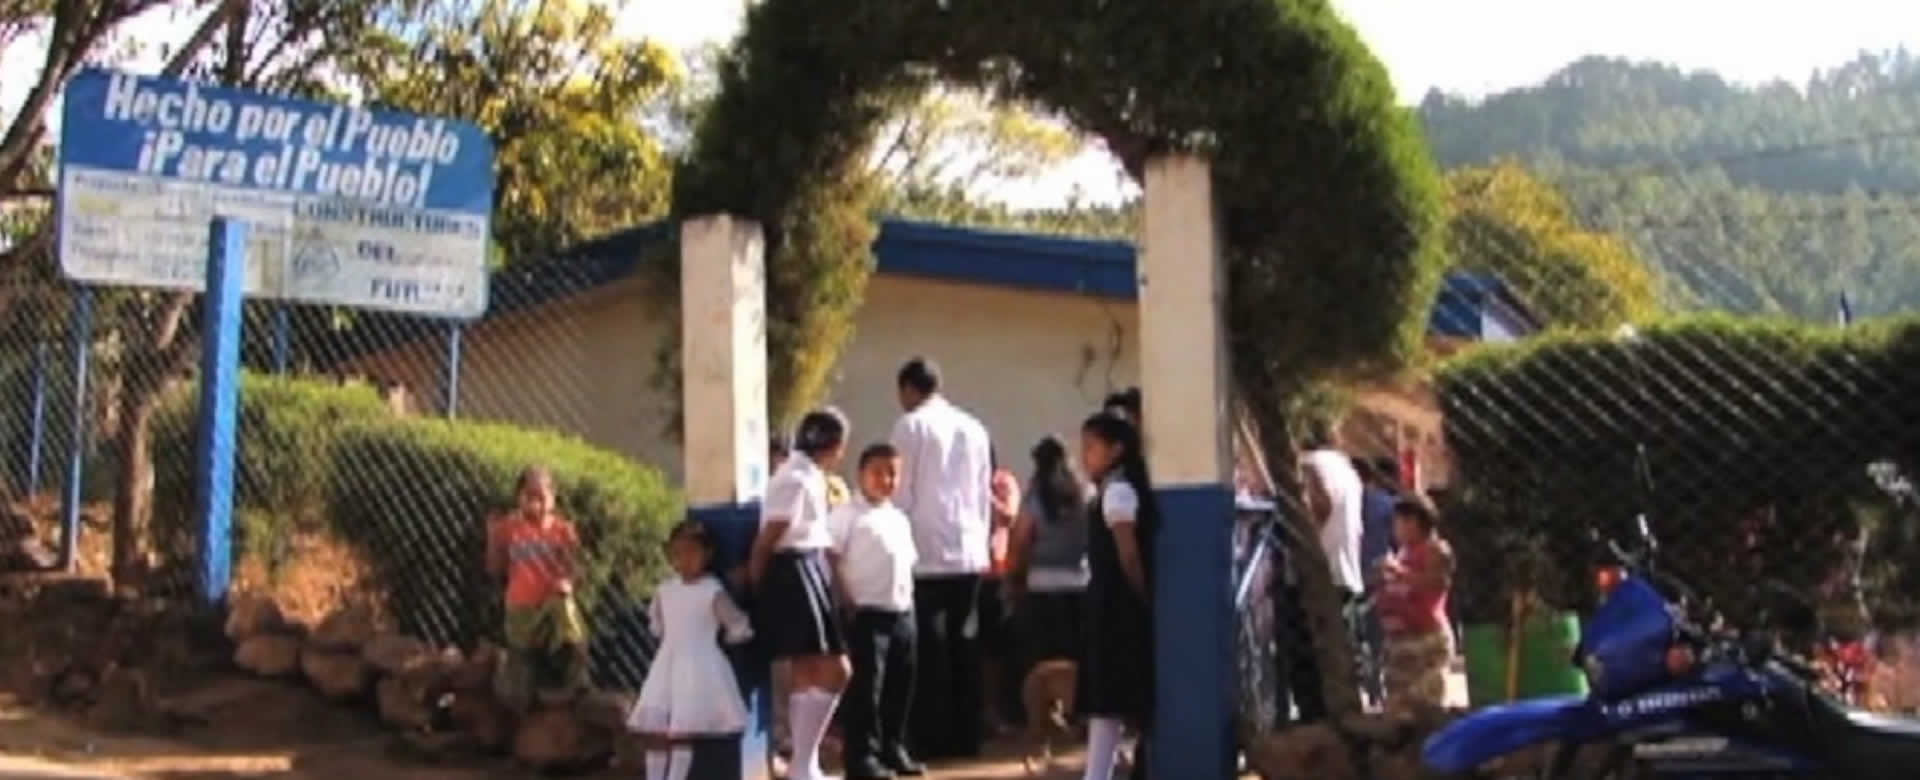 Nicaragua retoma ideario de Sandino con más y mejor educación